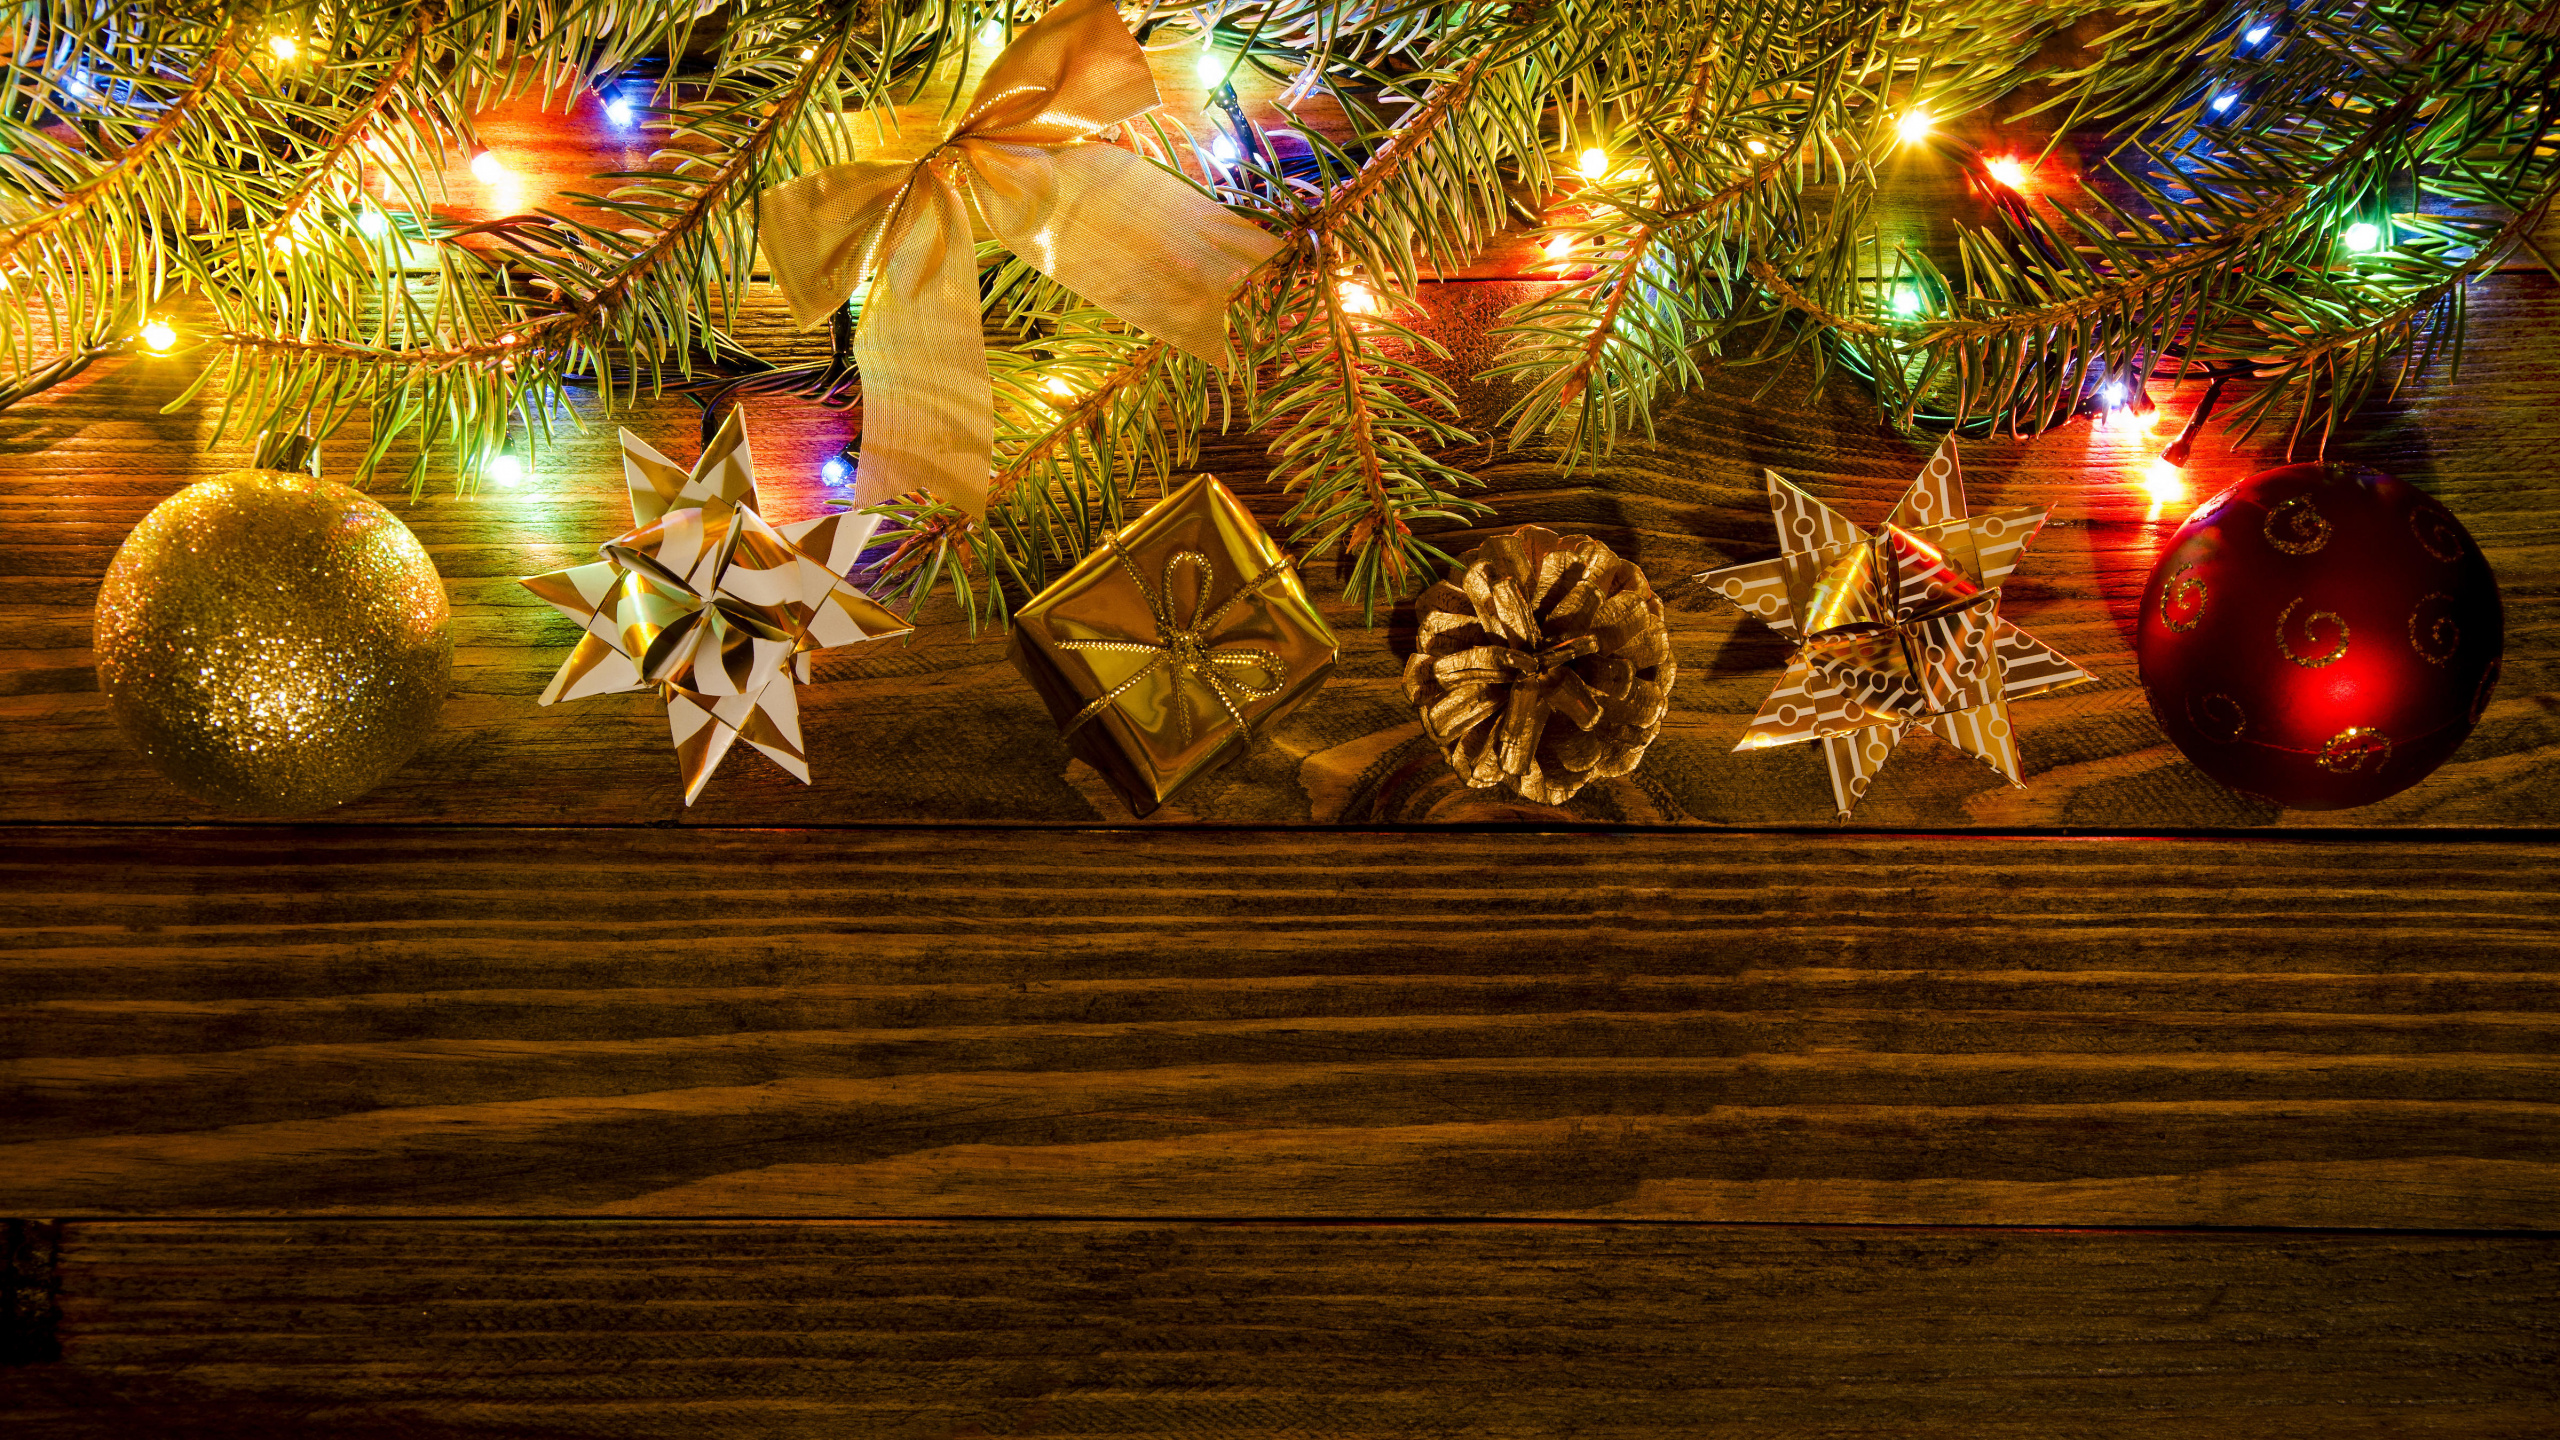 Neujahr, Weihnachten, Baum, Weihnachtsdekoration, Weihnachtsbeleuchtung. Wallpaper in 2560x1440 Resolution